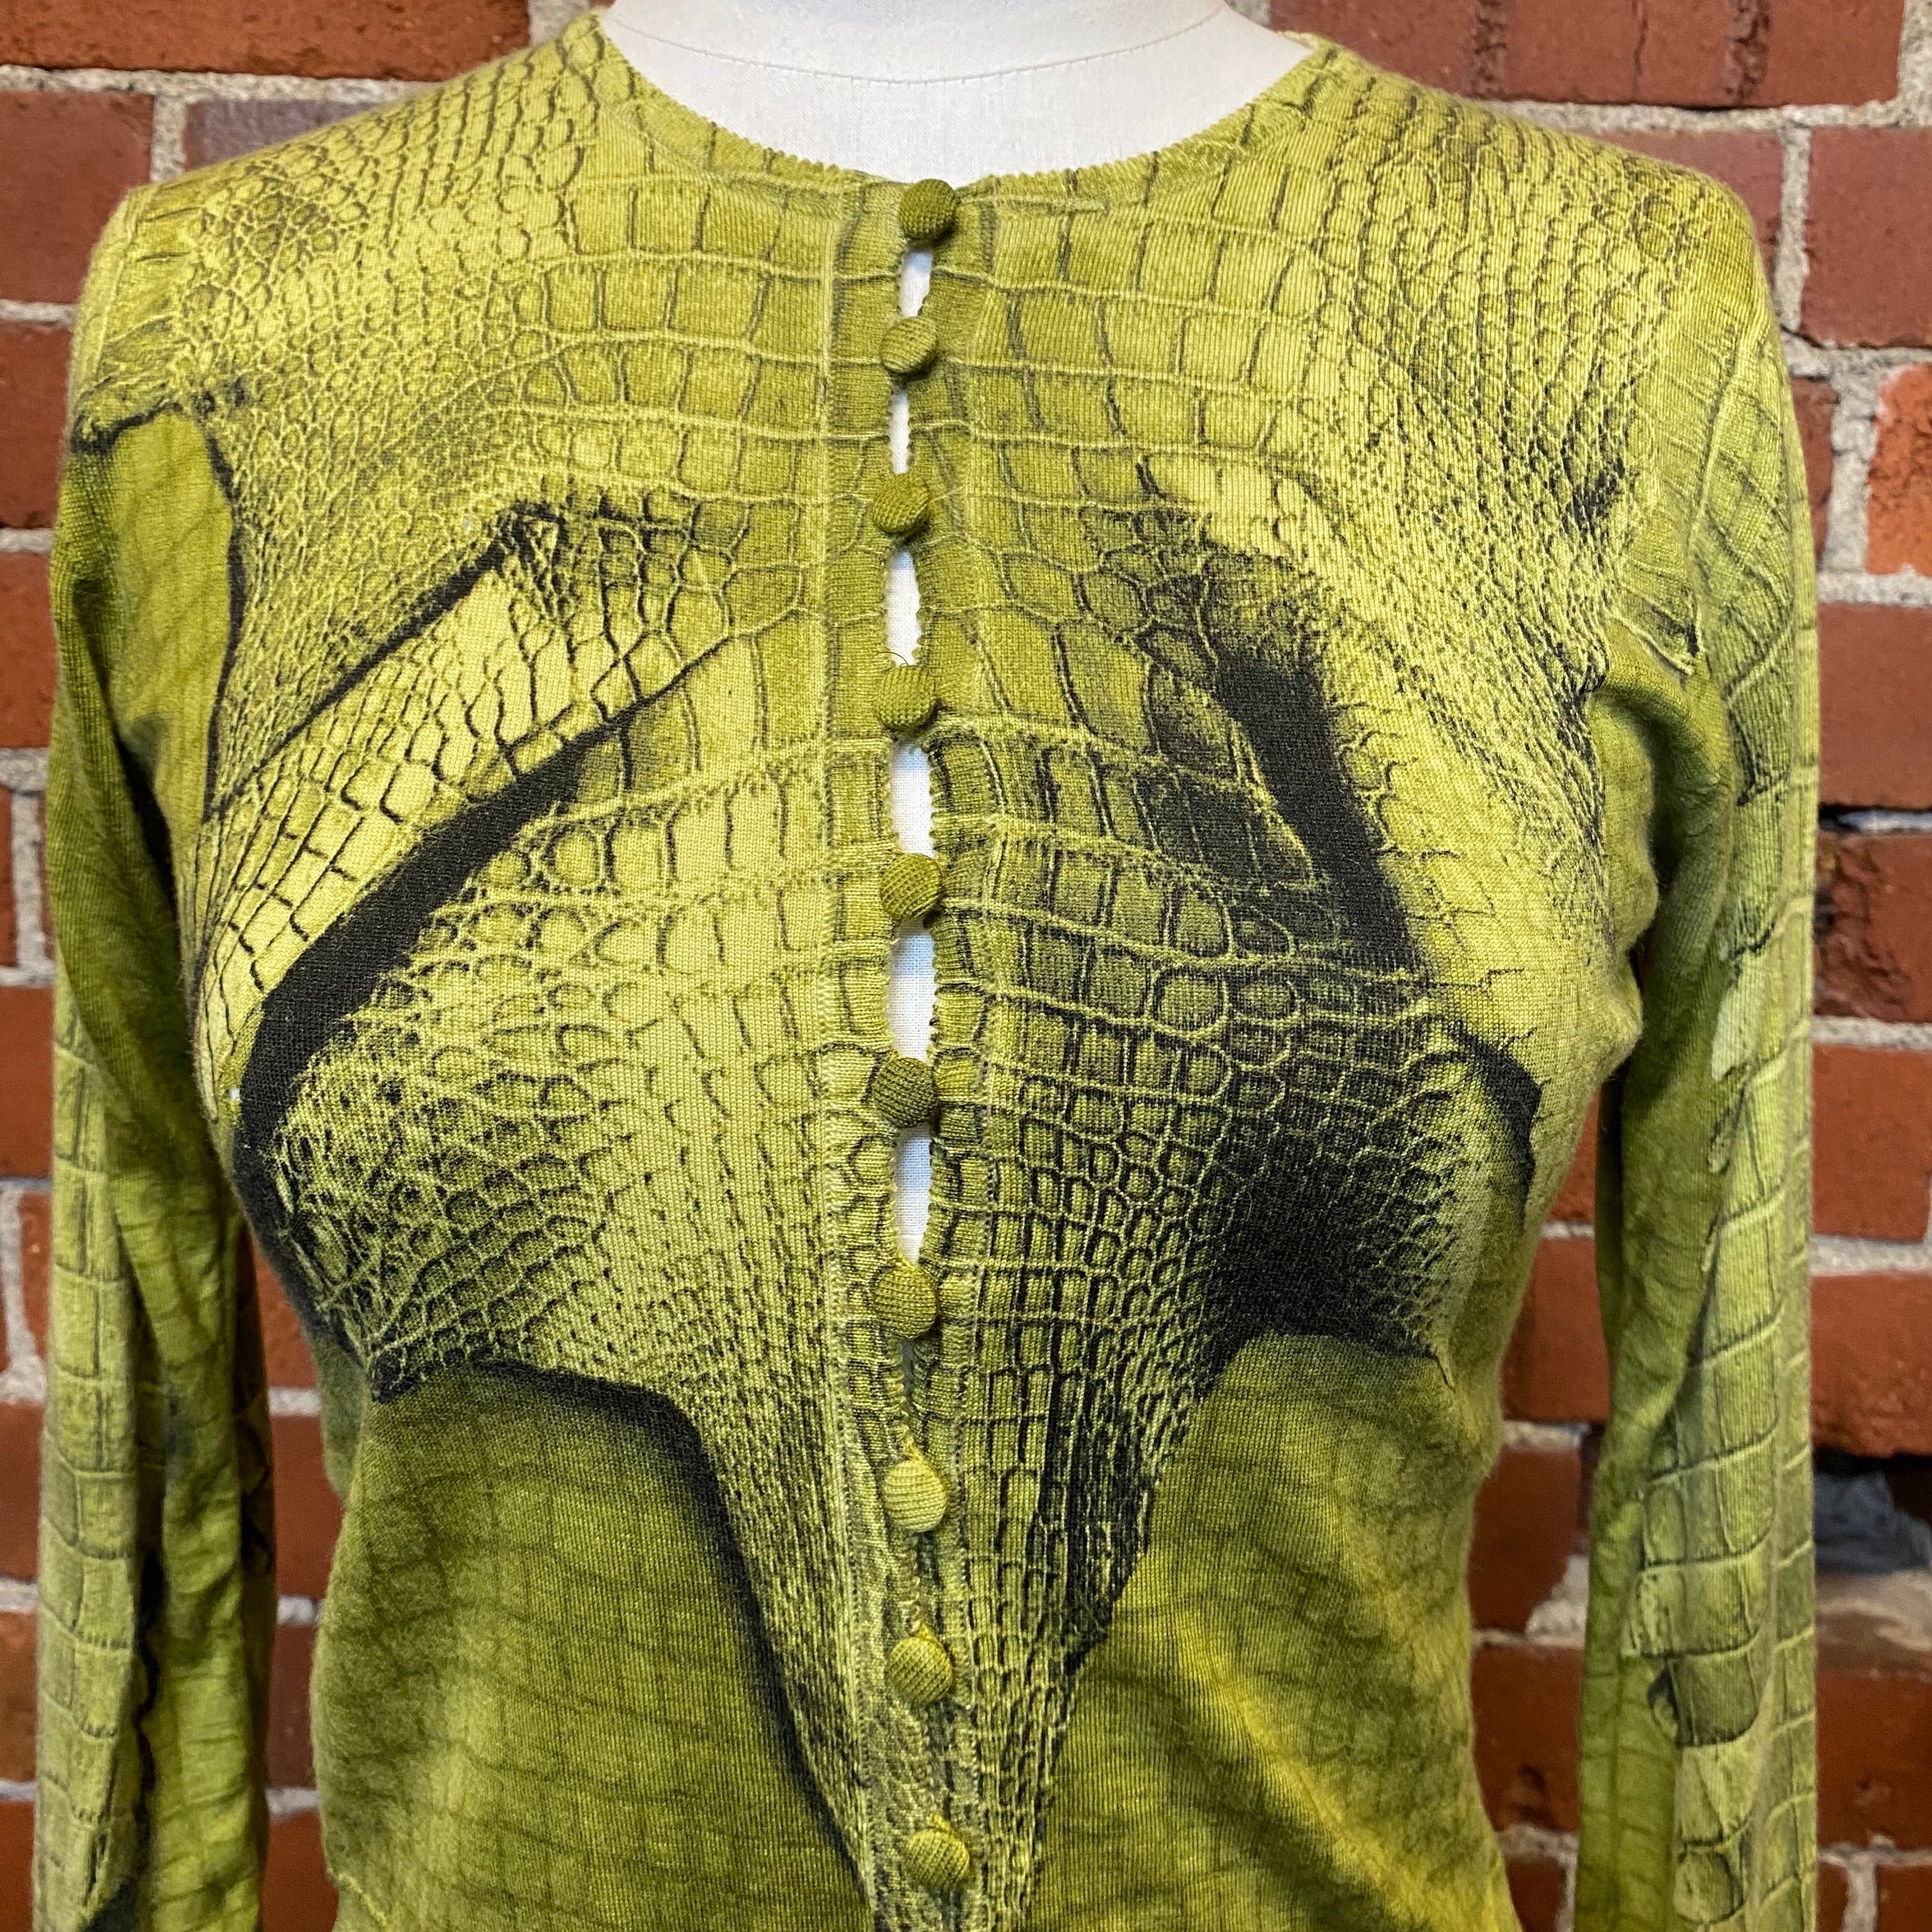 JOHN GALLIANO 2000s crocodile skin printed cardigan top